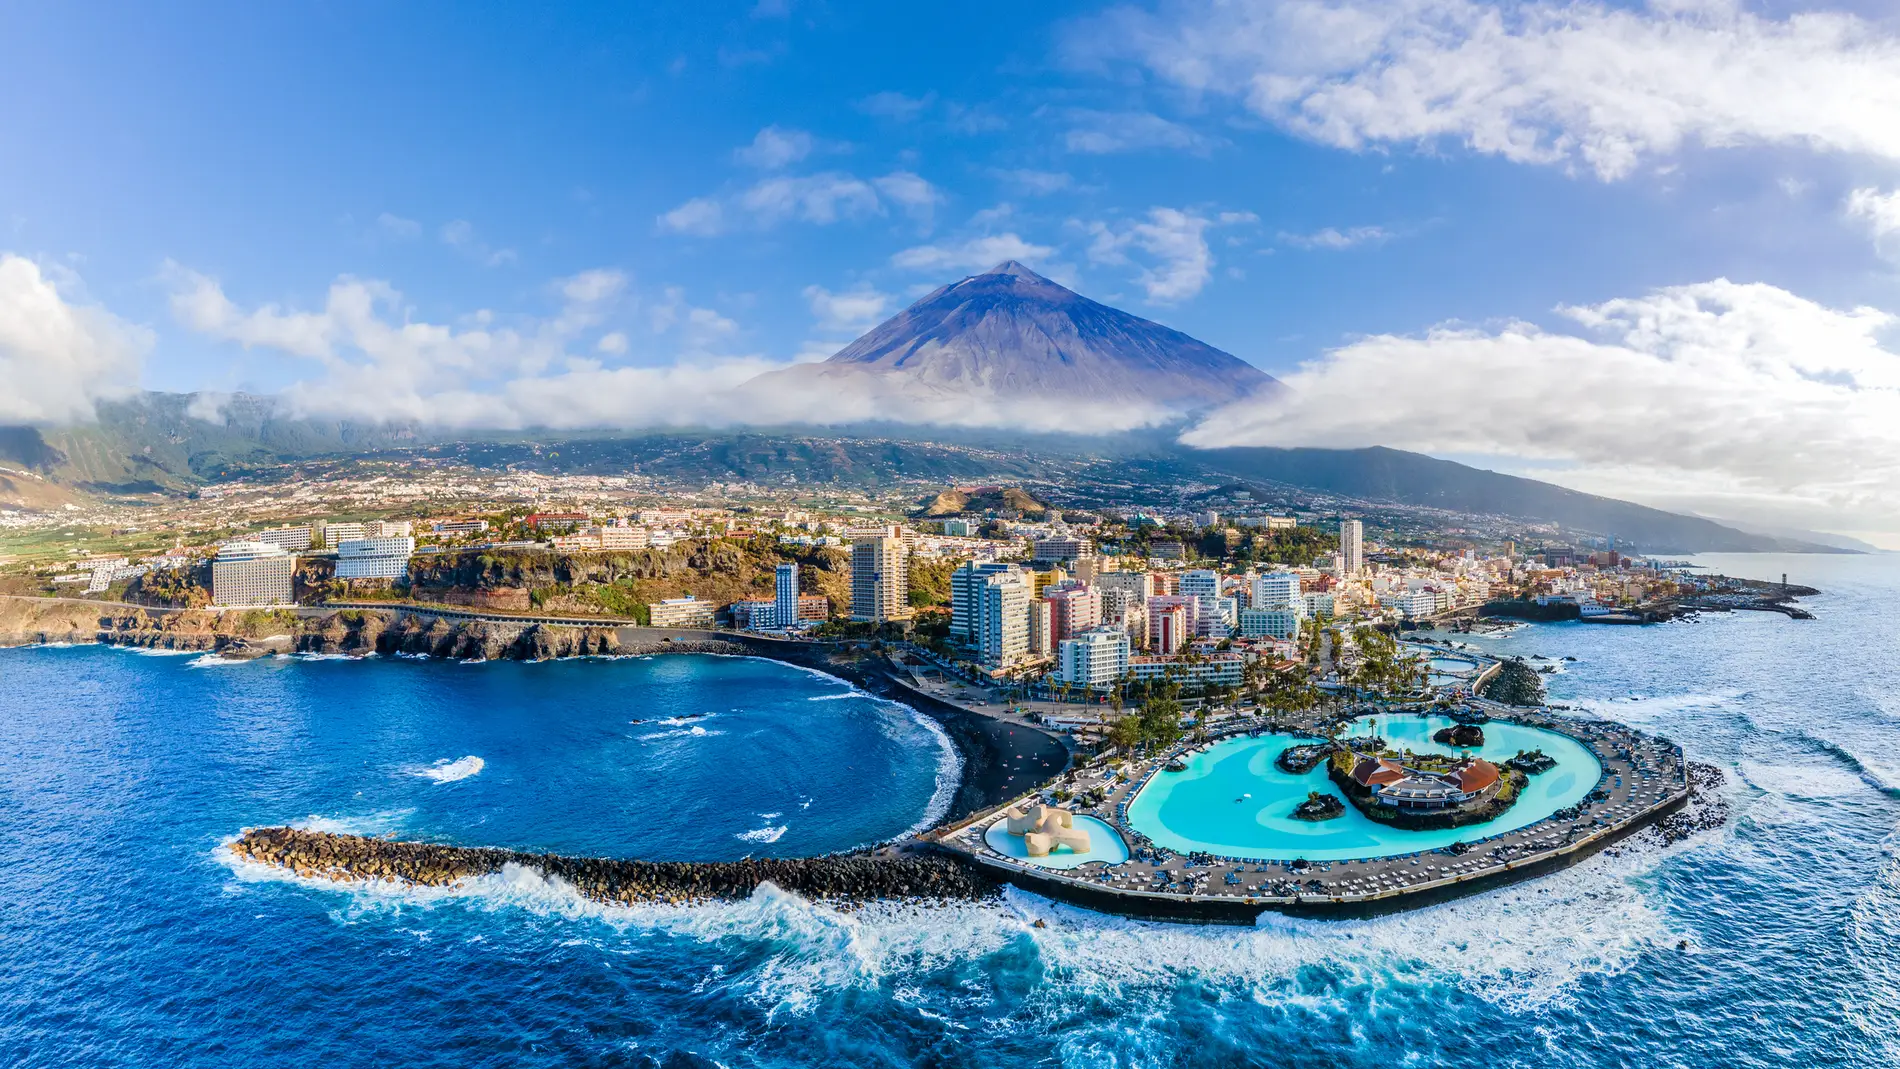 Vista aérea de Santa Cruz de Tenerife, en las Islas Canarias